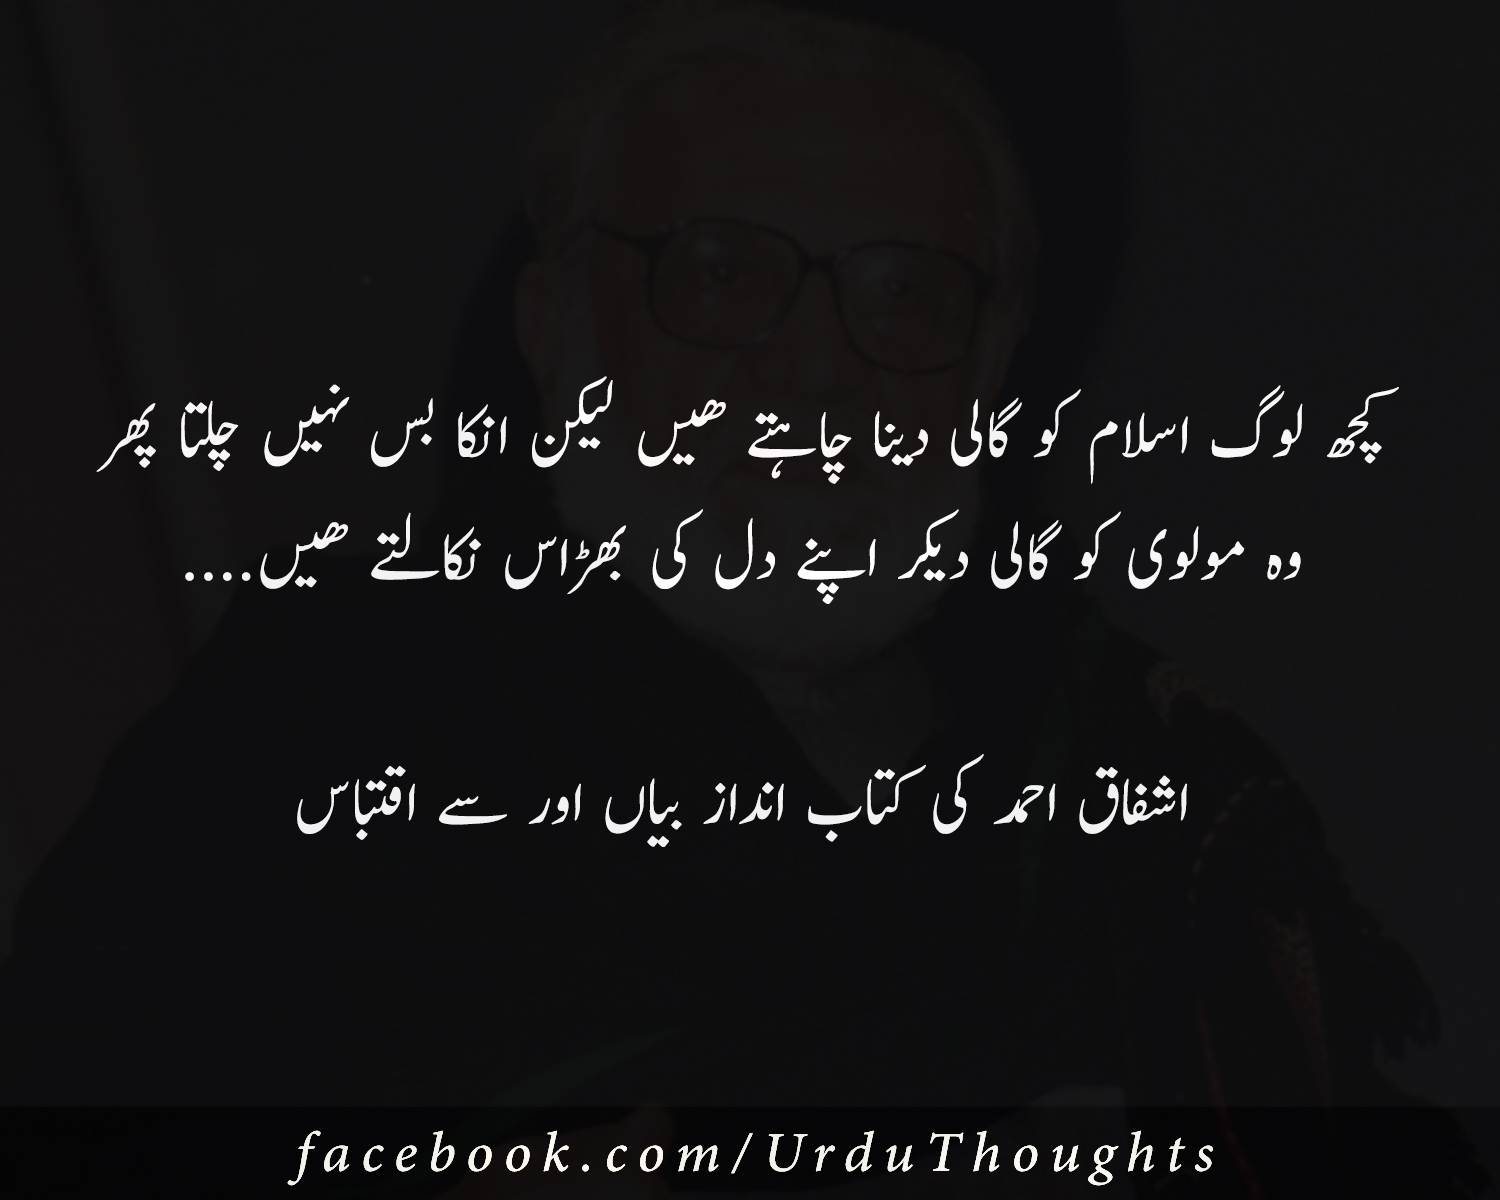 beautiful quotes on zindagi in urdu zindgi ki achi batn in urdu urdu quotes about life beautiful quotes in urdu for amazing quotes in urdu